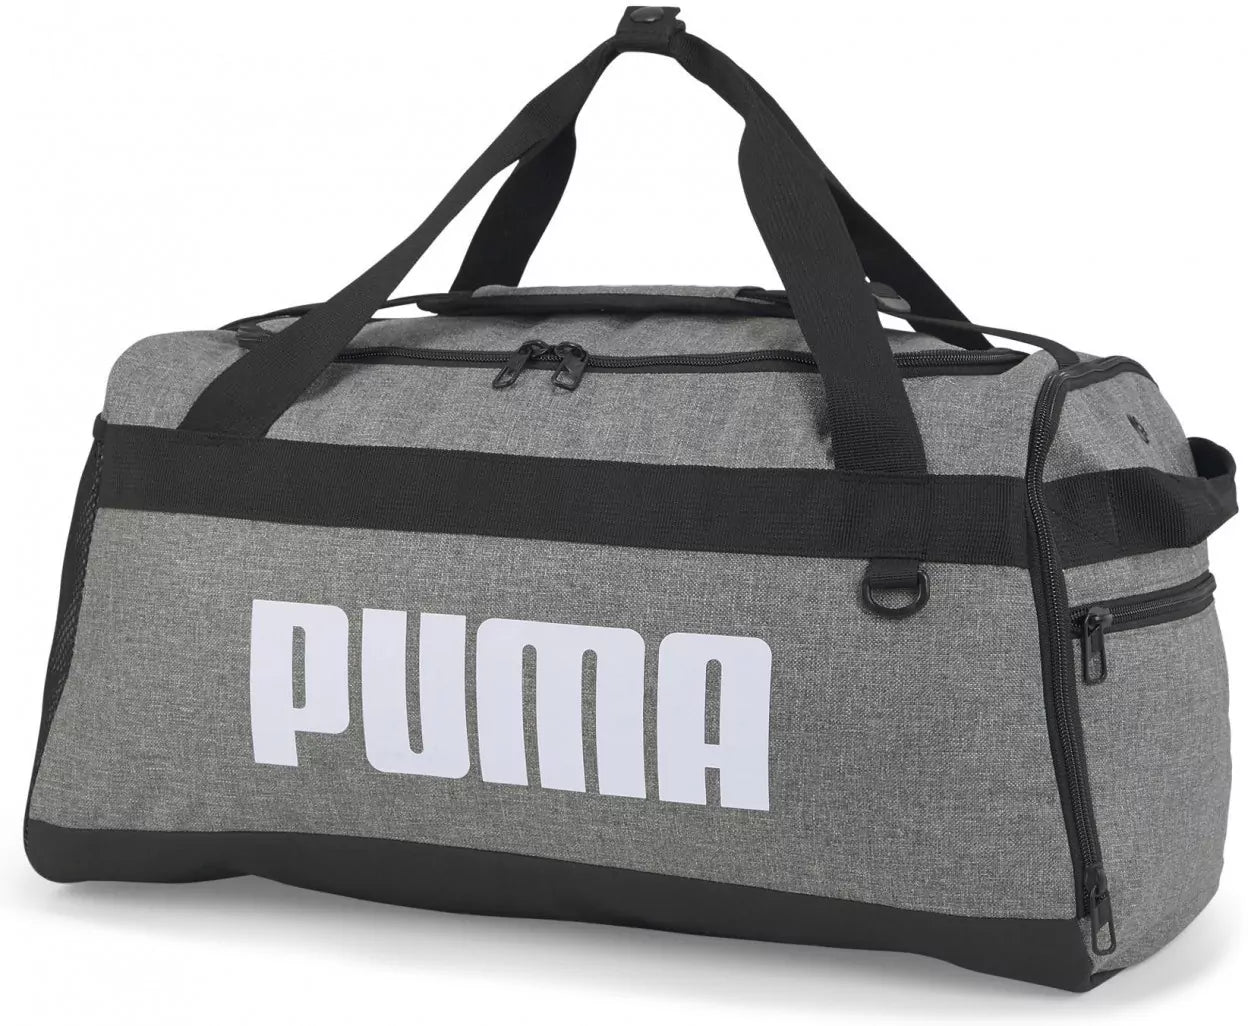 - Puma Challenger Duffel Bag MEDIUM - MEDIUM GRAY - (079531 06) - F